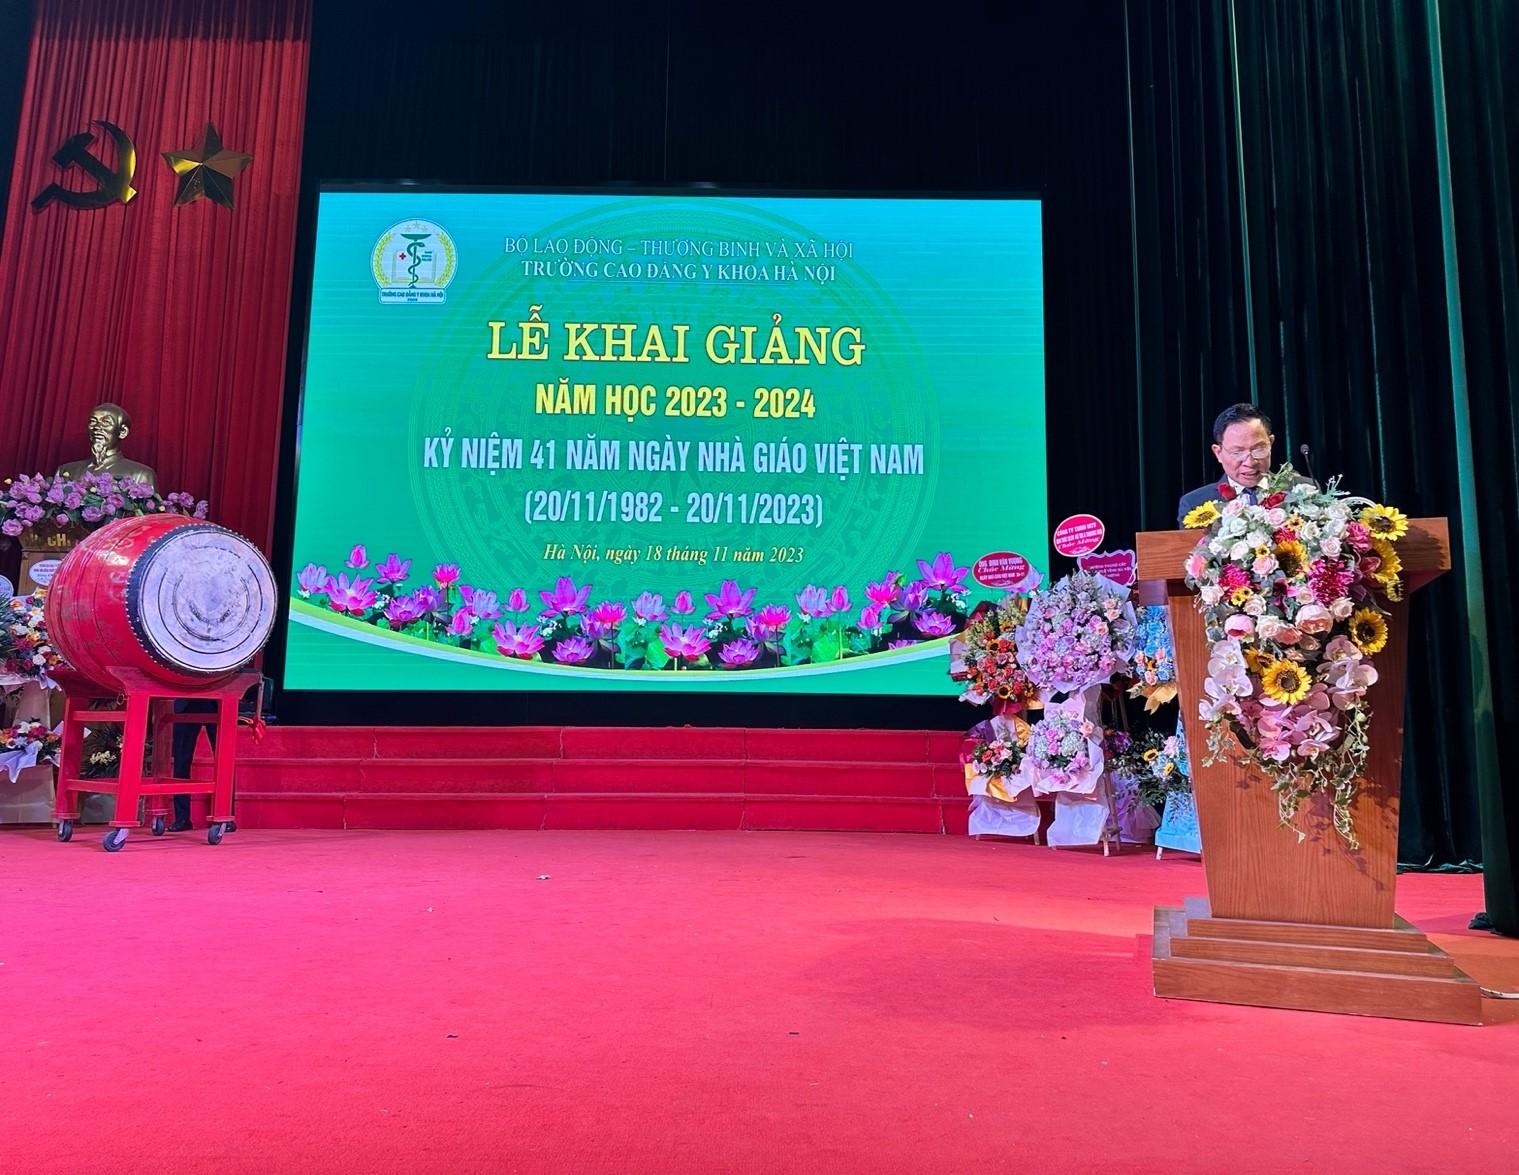 Trường Cao đẳng Y Khoa Hà Nội: Long trọng tổ chức Lễ Khai giảng năm học 2023 - 2024 và Kỷ niệm 41 năm ngày Nhà giáo Việt Nam (20/11/1982 - 20/11/2023)